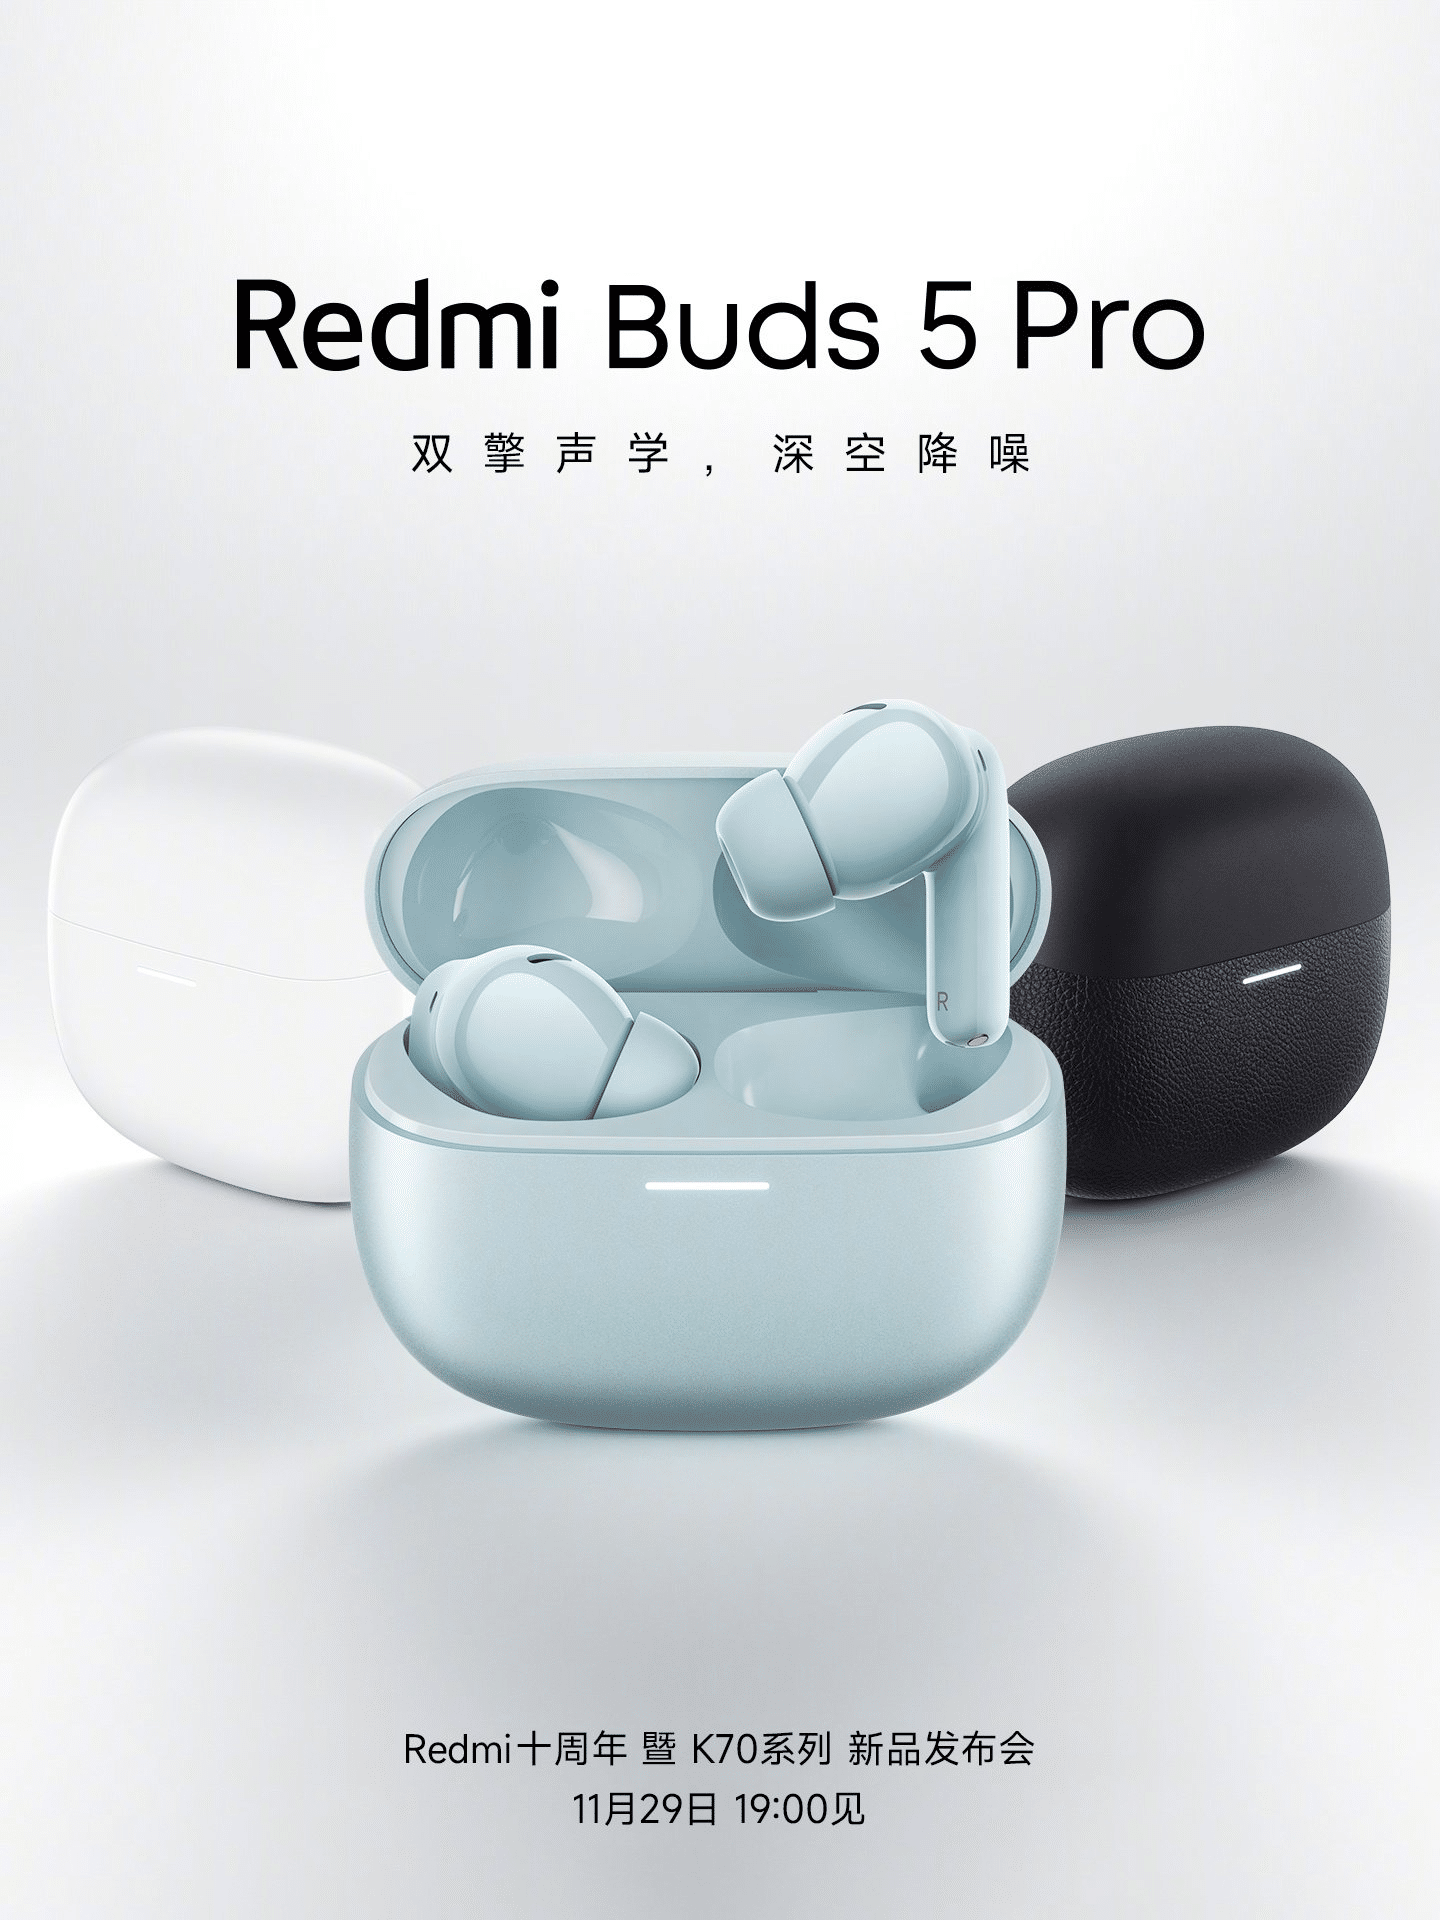 Xiaomi Redmi Buds 5 Pro Con Cancelación De Ruido Activa